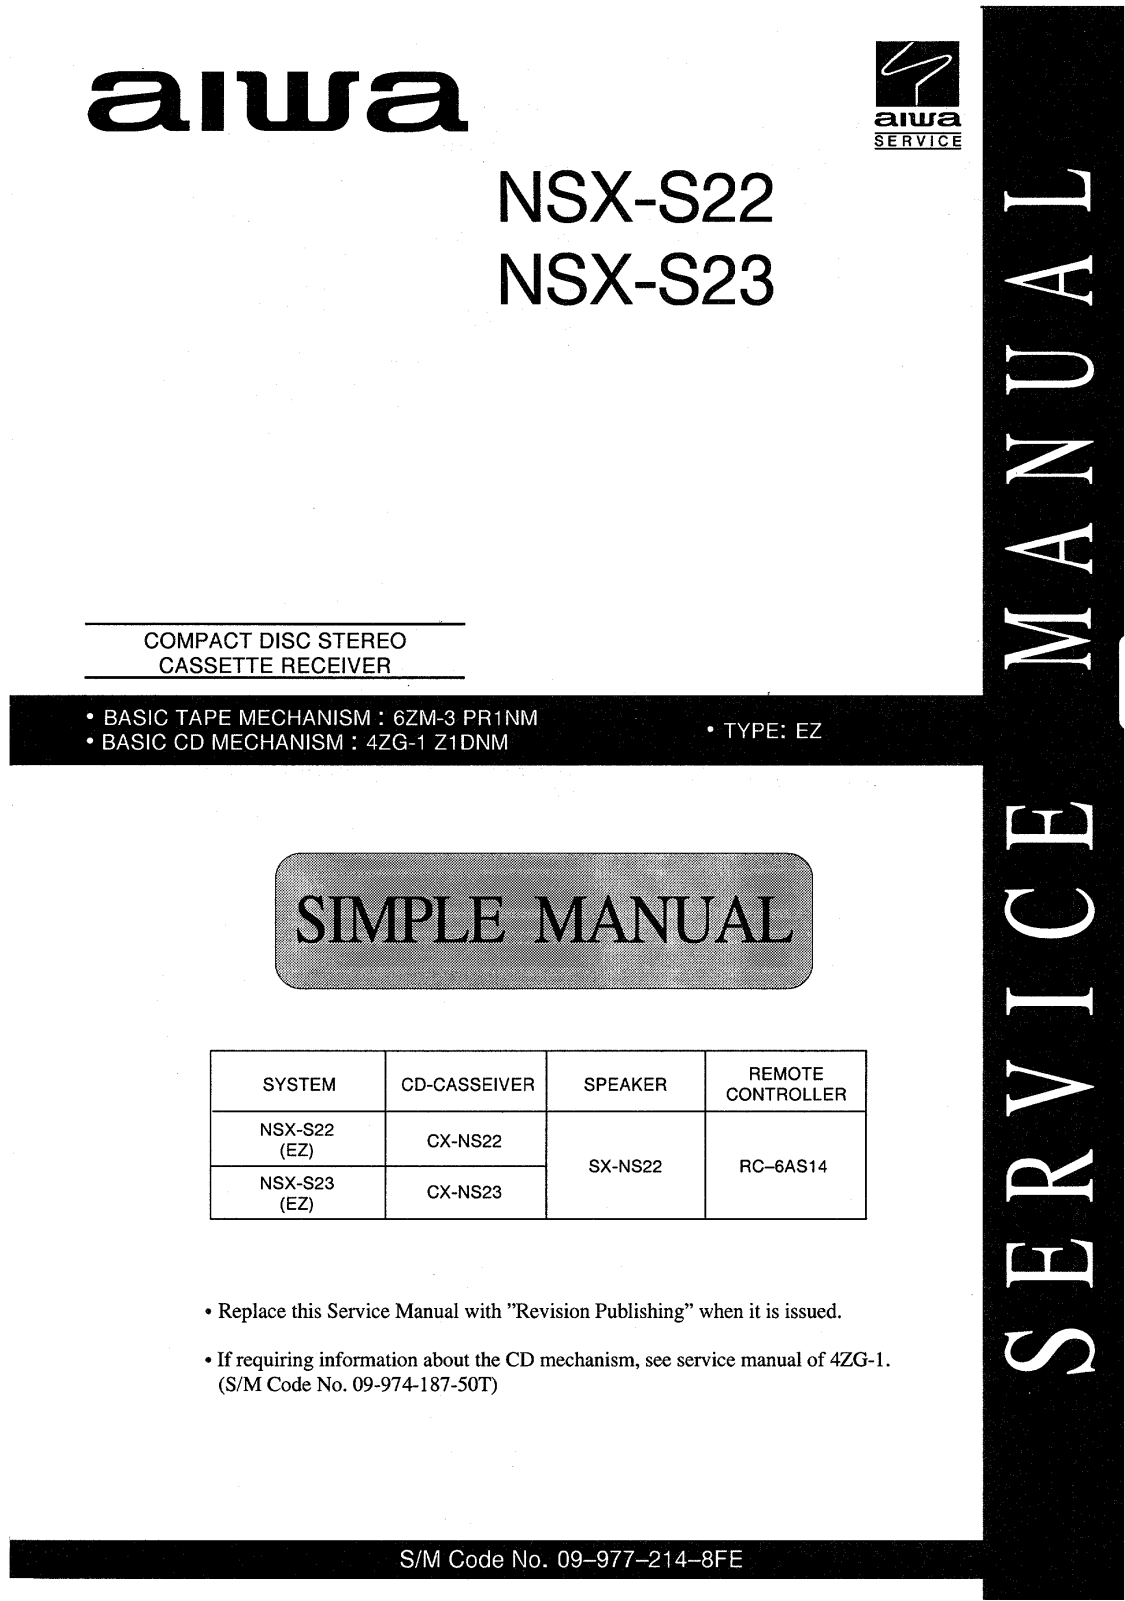 Aiwa NSX-S22, NSX-S23 Service Manual